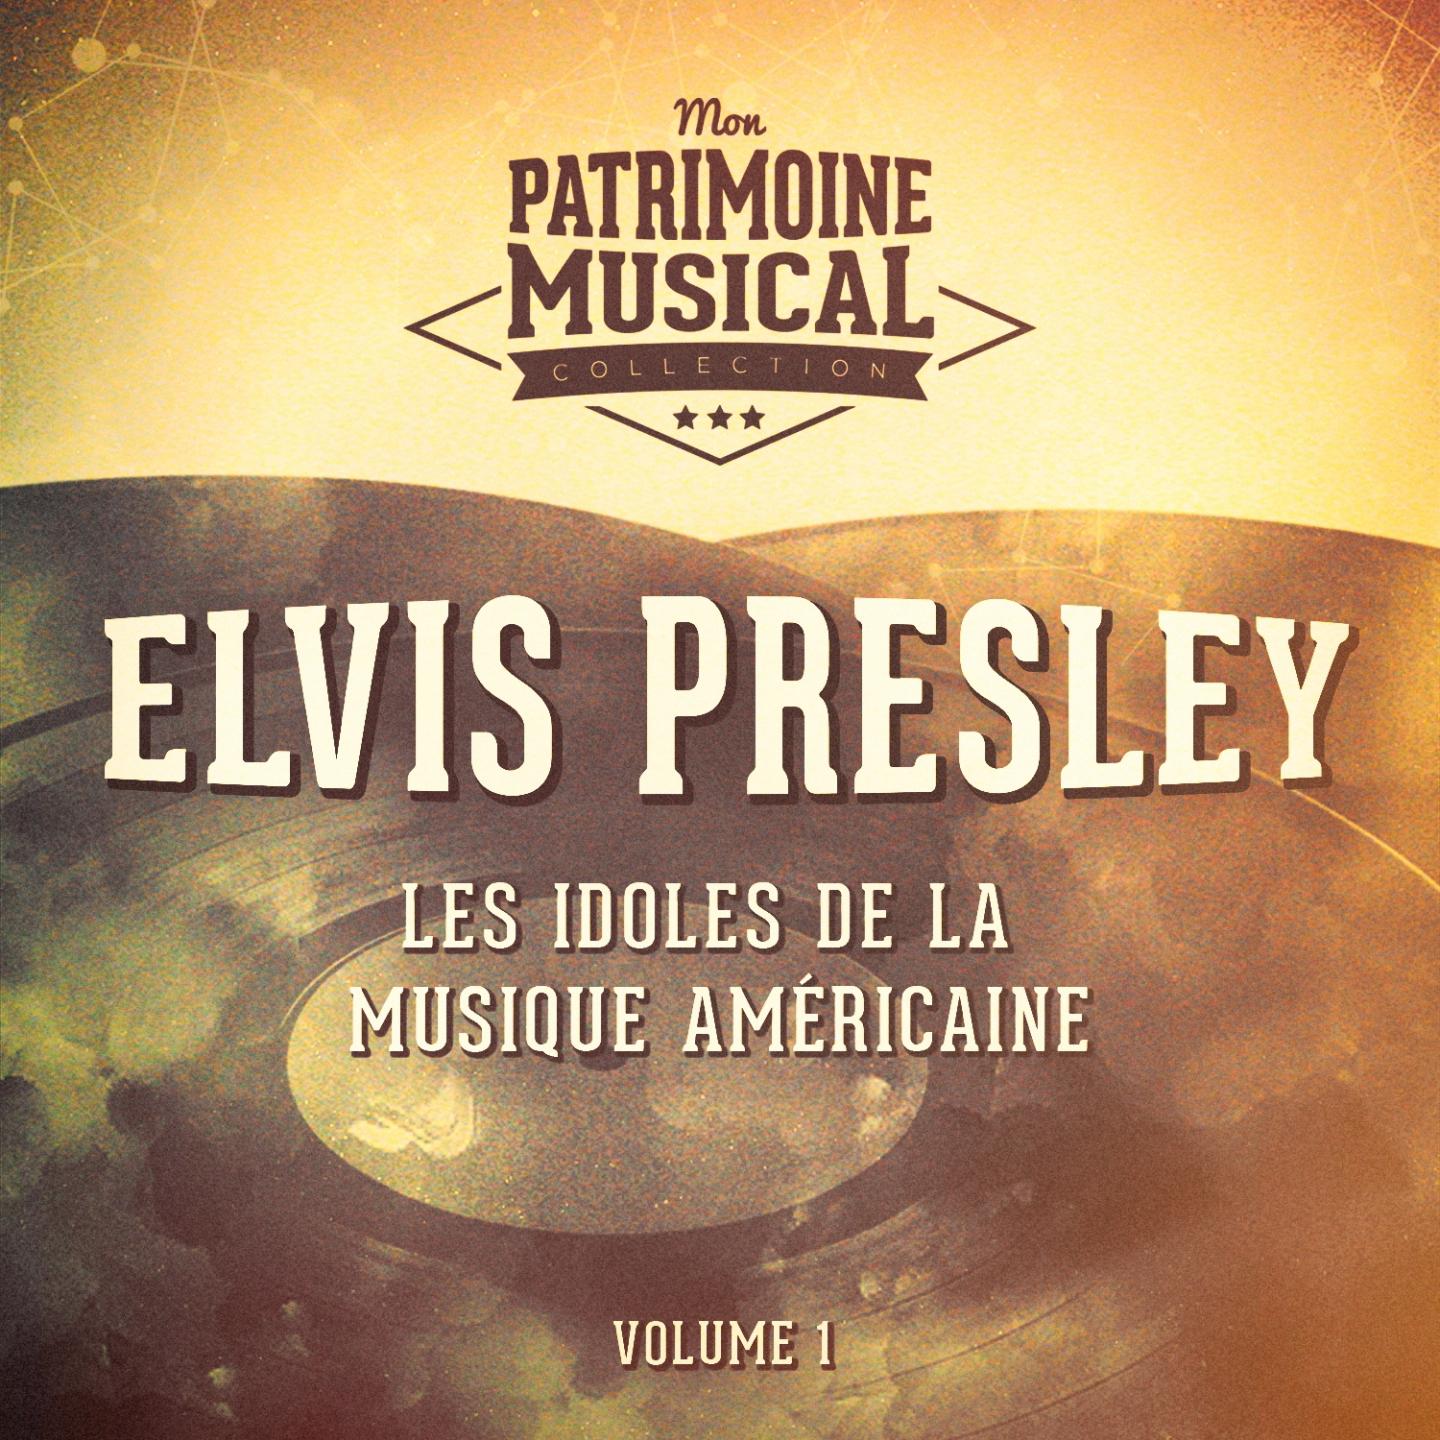 Les Idoles De La Musique Ame ricaine: Elvis Presley, Vol. 1